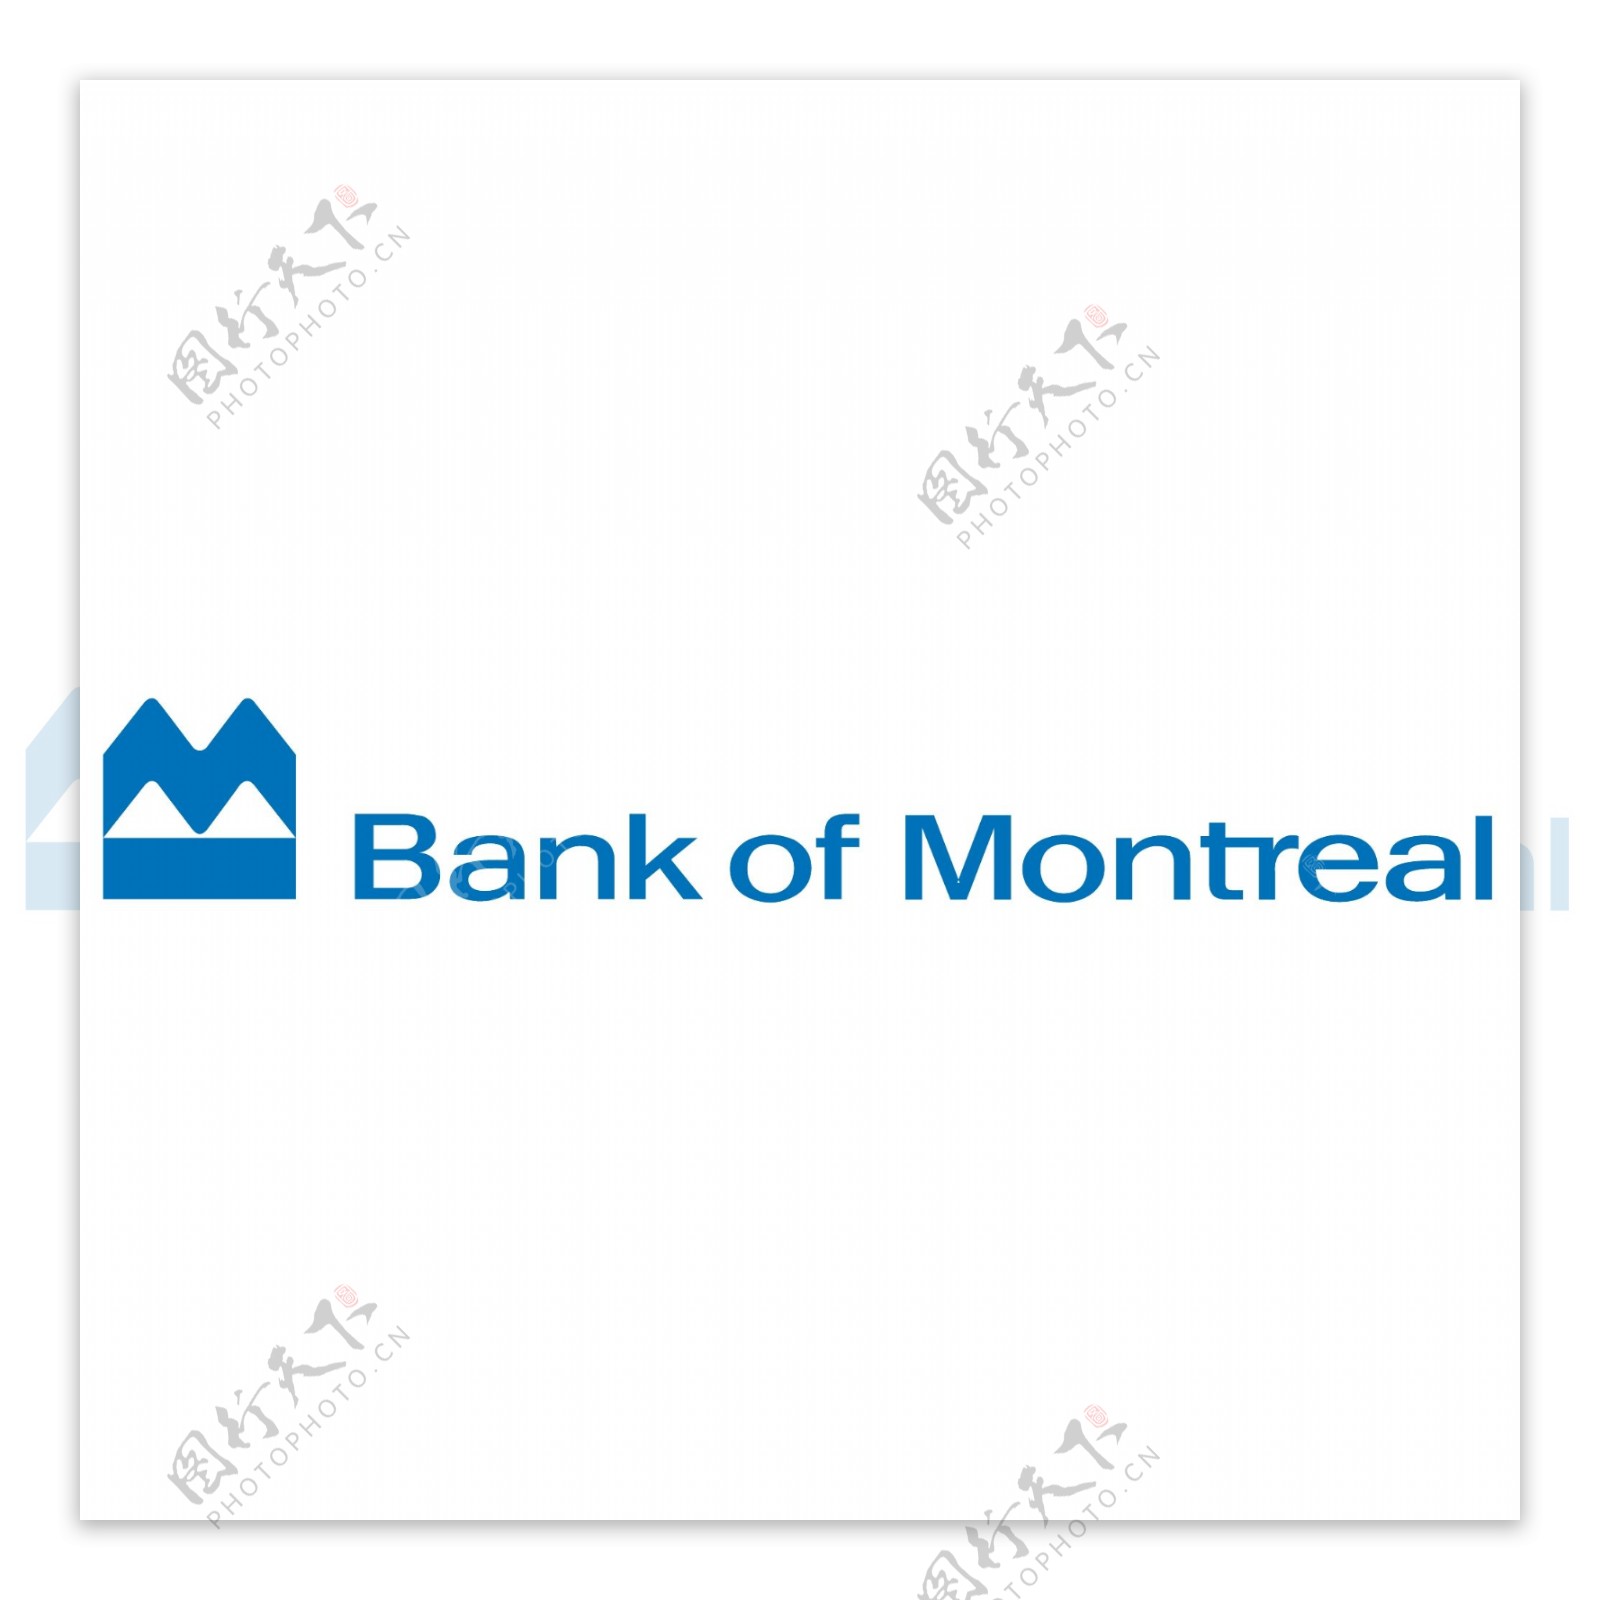 加拿大蒙特利尔银行标志Logo矢量图